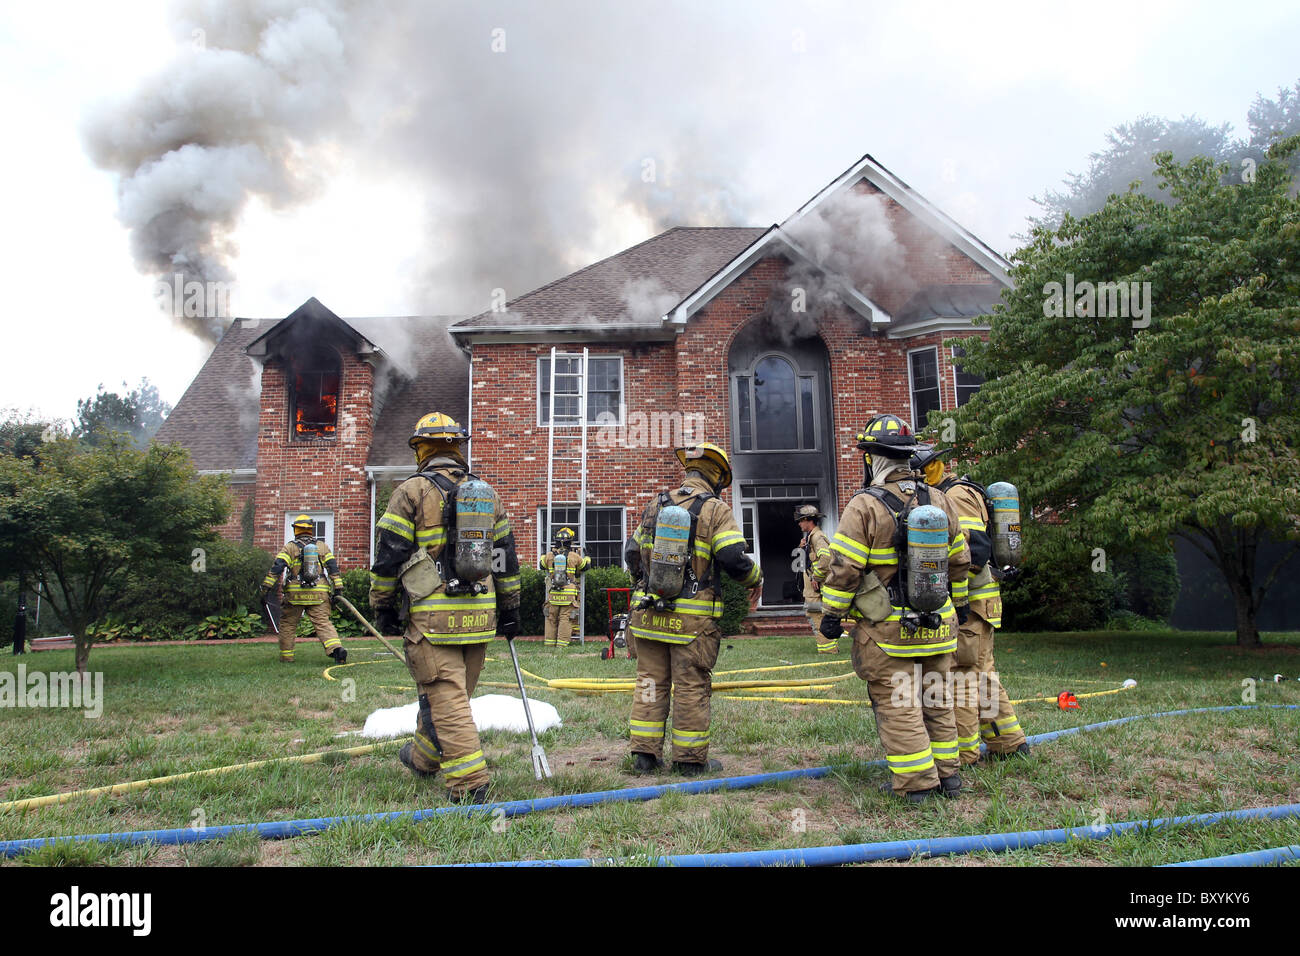 Los bomberos sacan un incendio en una casa de 2 pisos. Foto de stock